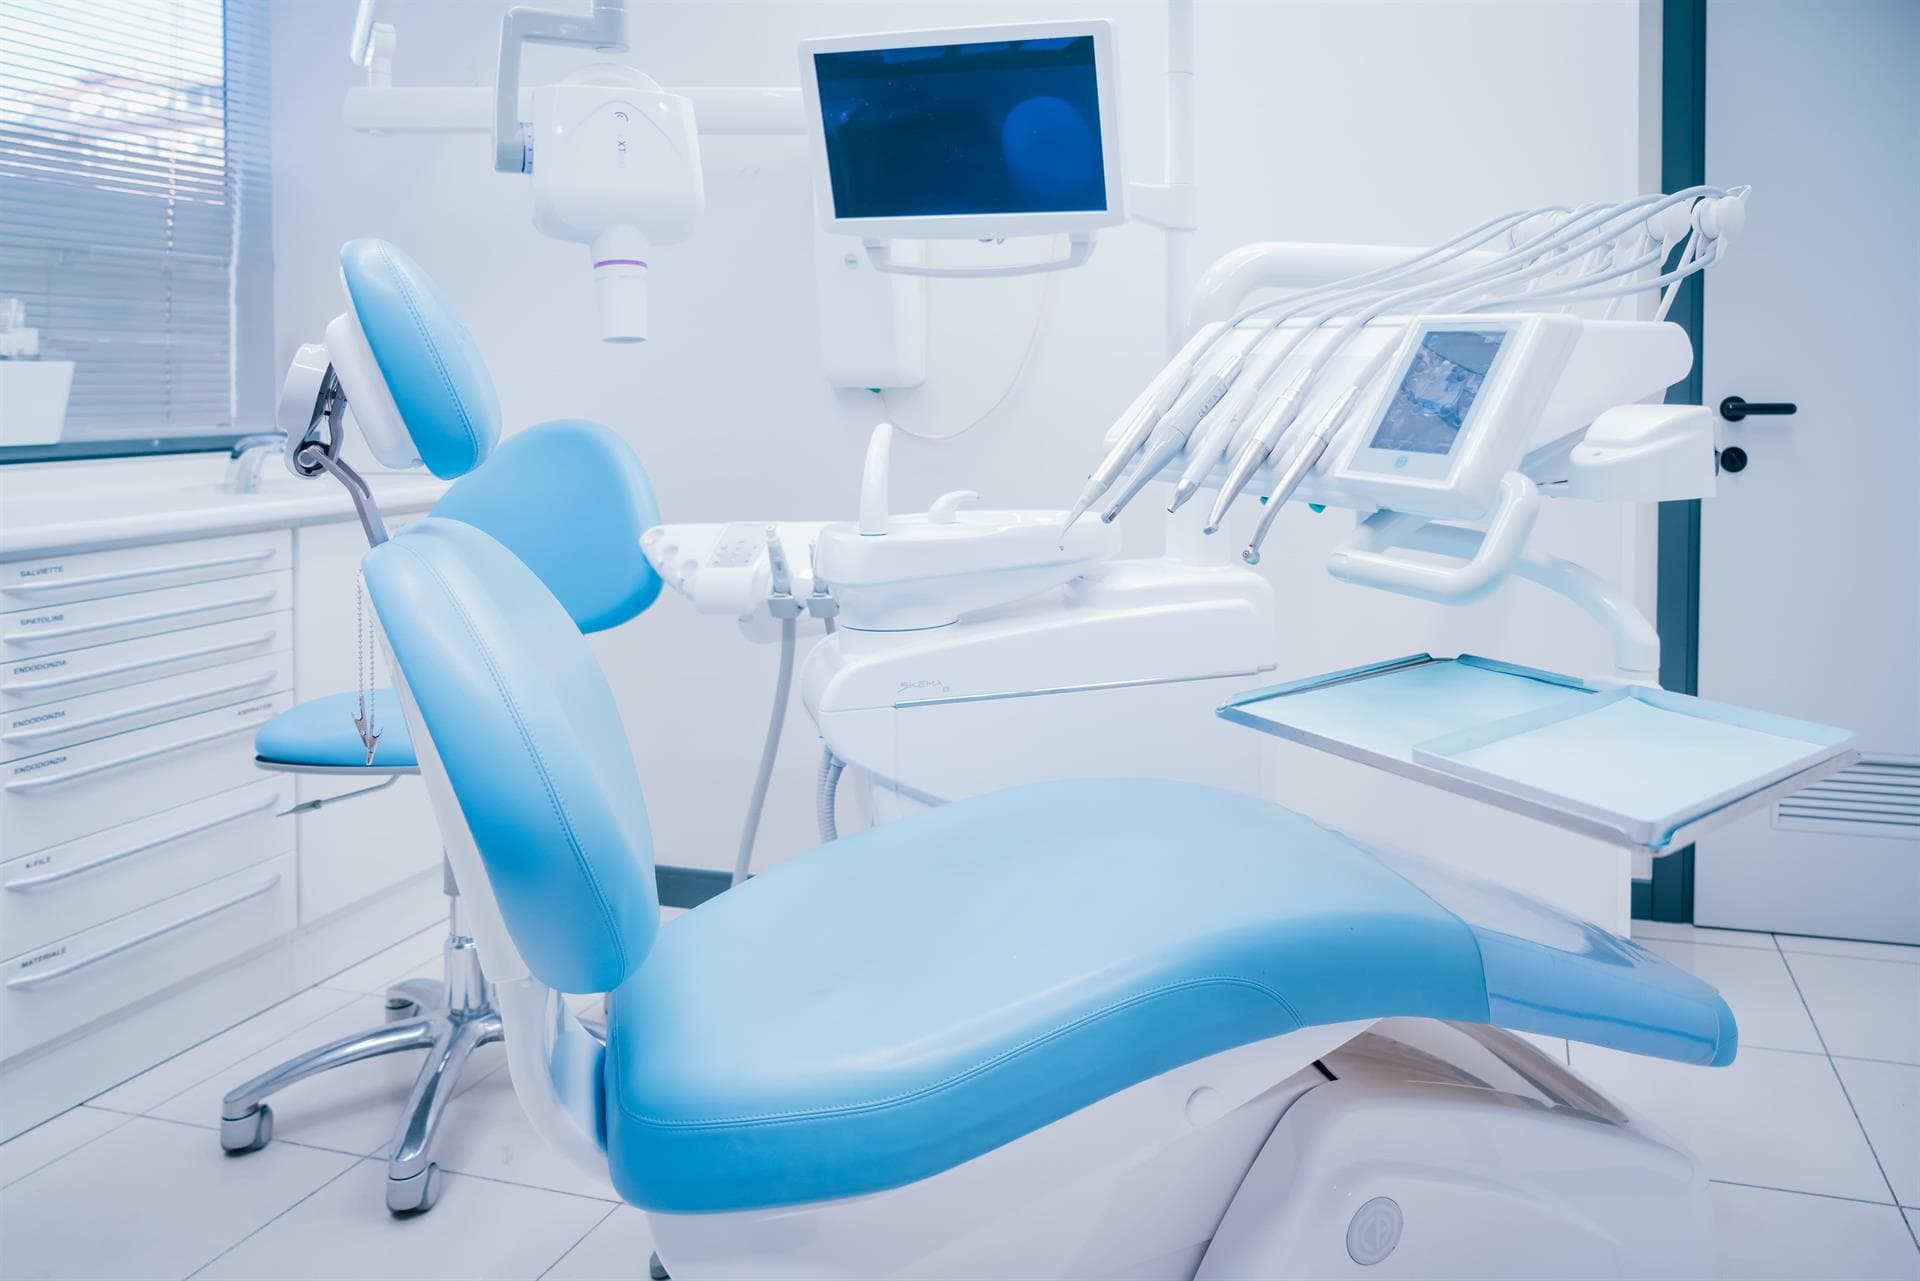 Centro Odontológico Dentine - Odontología conservadora en Vigo